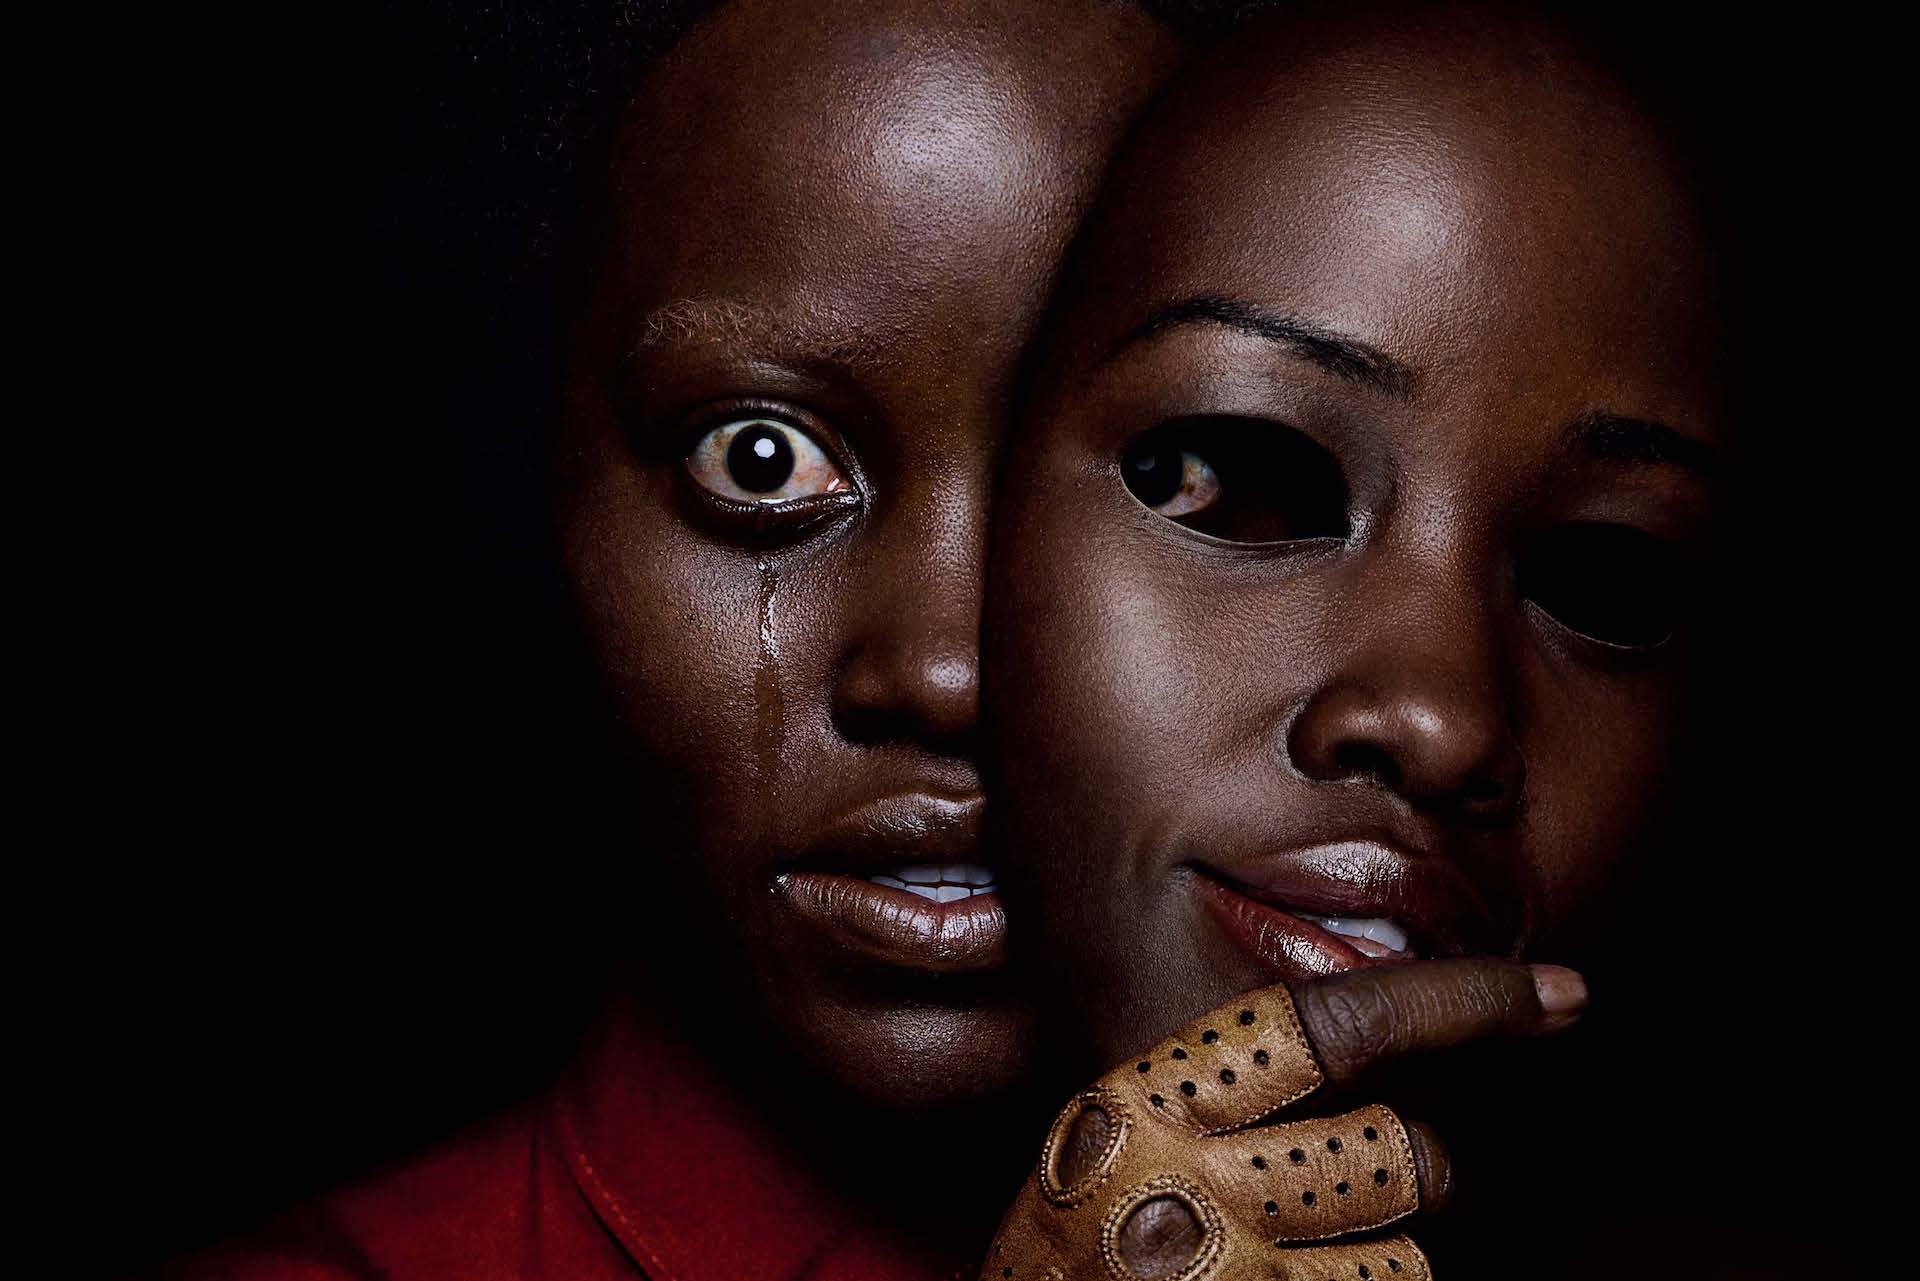 Lupita Nyong'o mit einer Maske in einem Poster für Kritik Wir